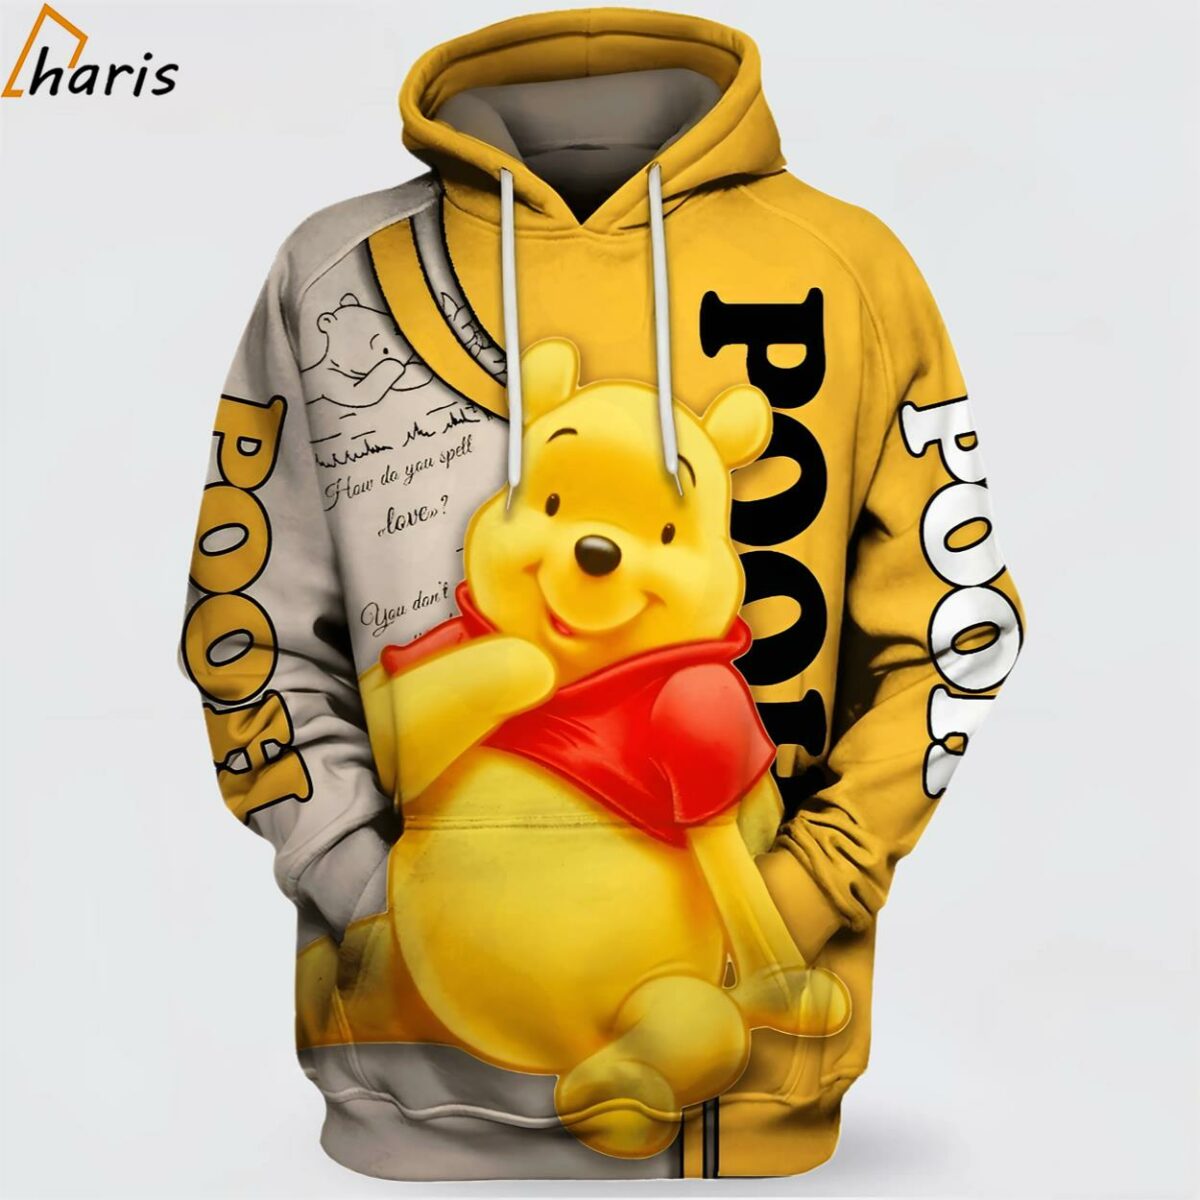 Winnie The Pooh 3D Hoodie 1 jersey